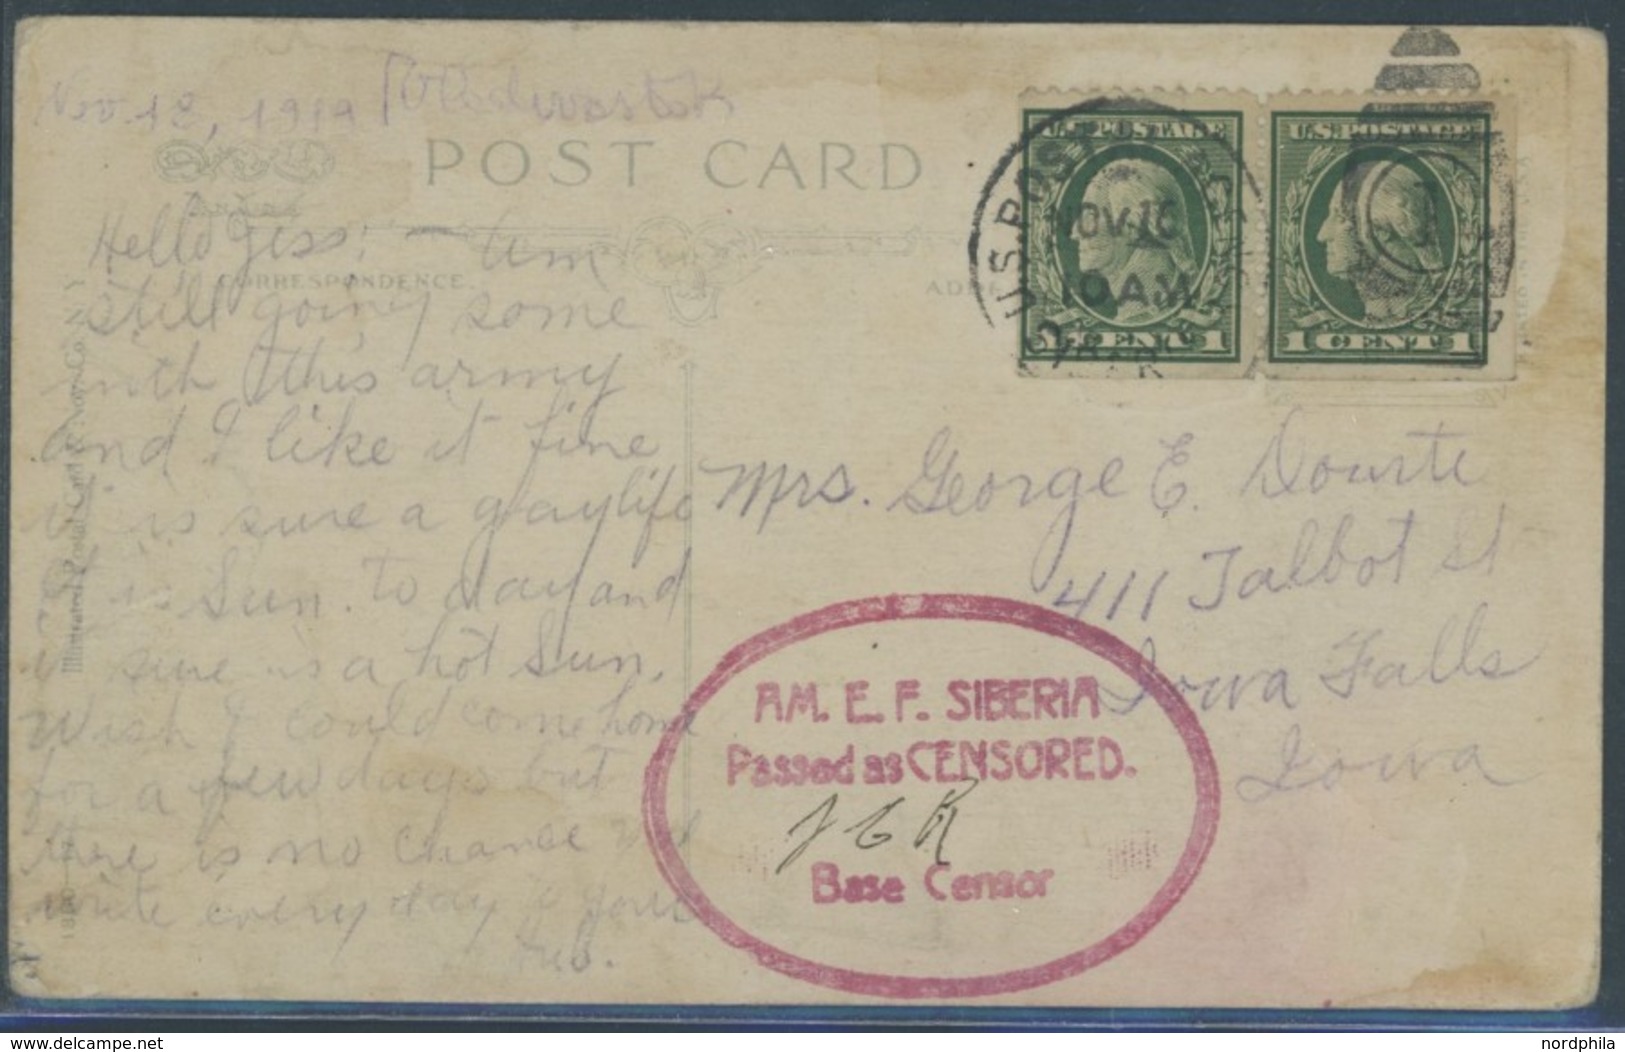 FELDPOST 1919, Militärbildpostkarte Des Von Präsident Wilson Nach Wladiwostok Entsandten 7950 Mann Starken US-Expedition - Cartas & Documentos